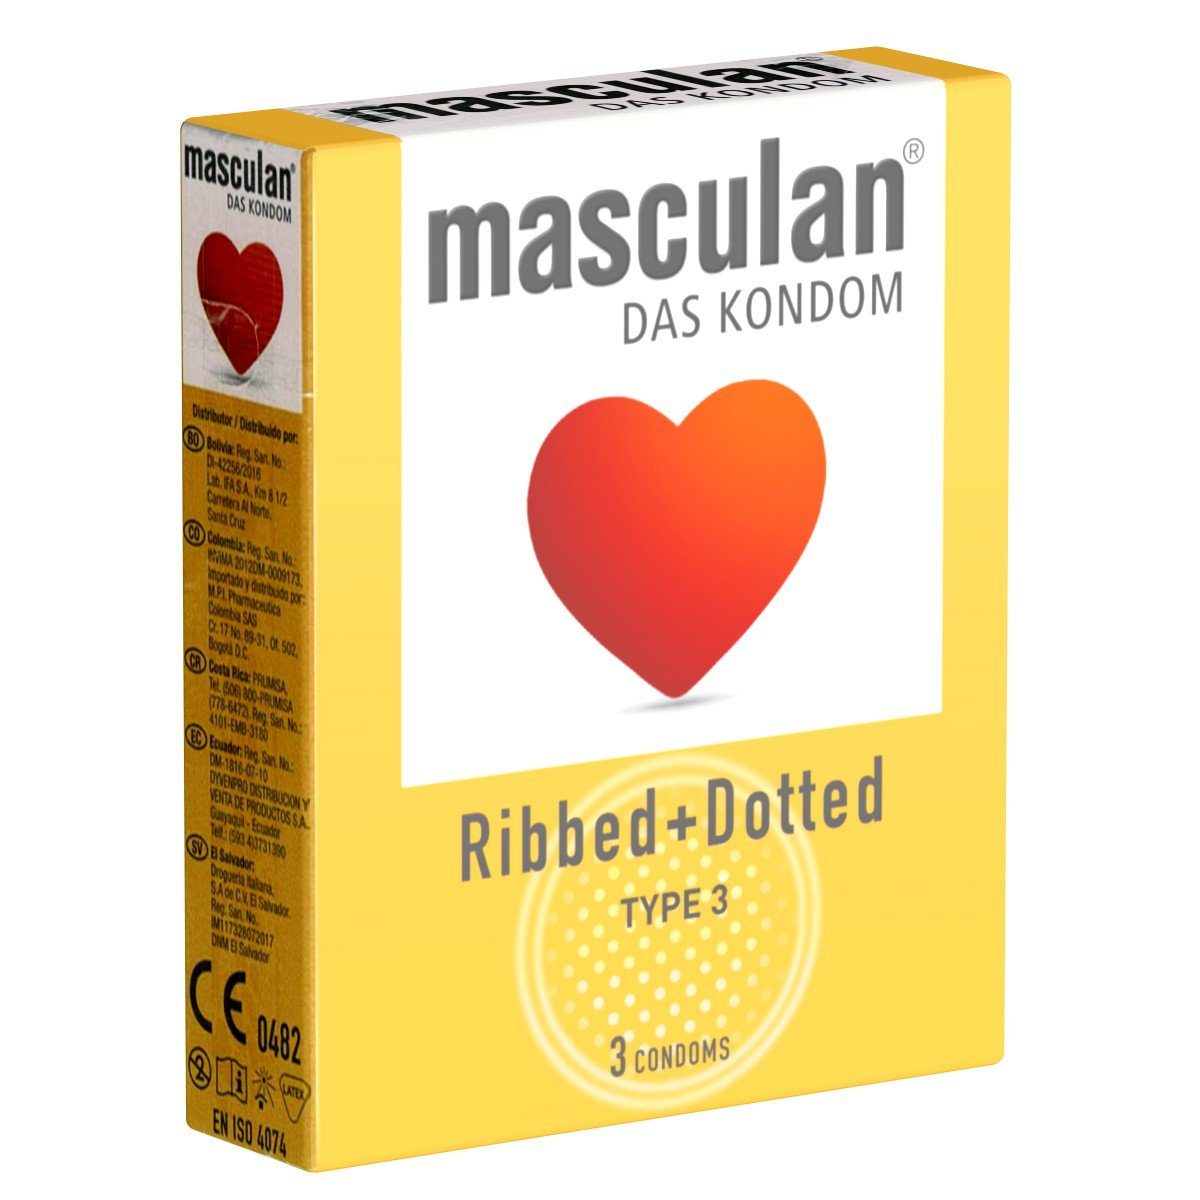 mehr Packung (ribbed/dotted) mit, gerippt-genoppte Typ Kondome 3 St., Gefühl Kondome 3 Masculan für